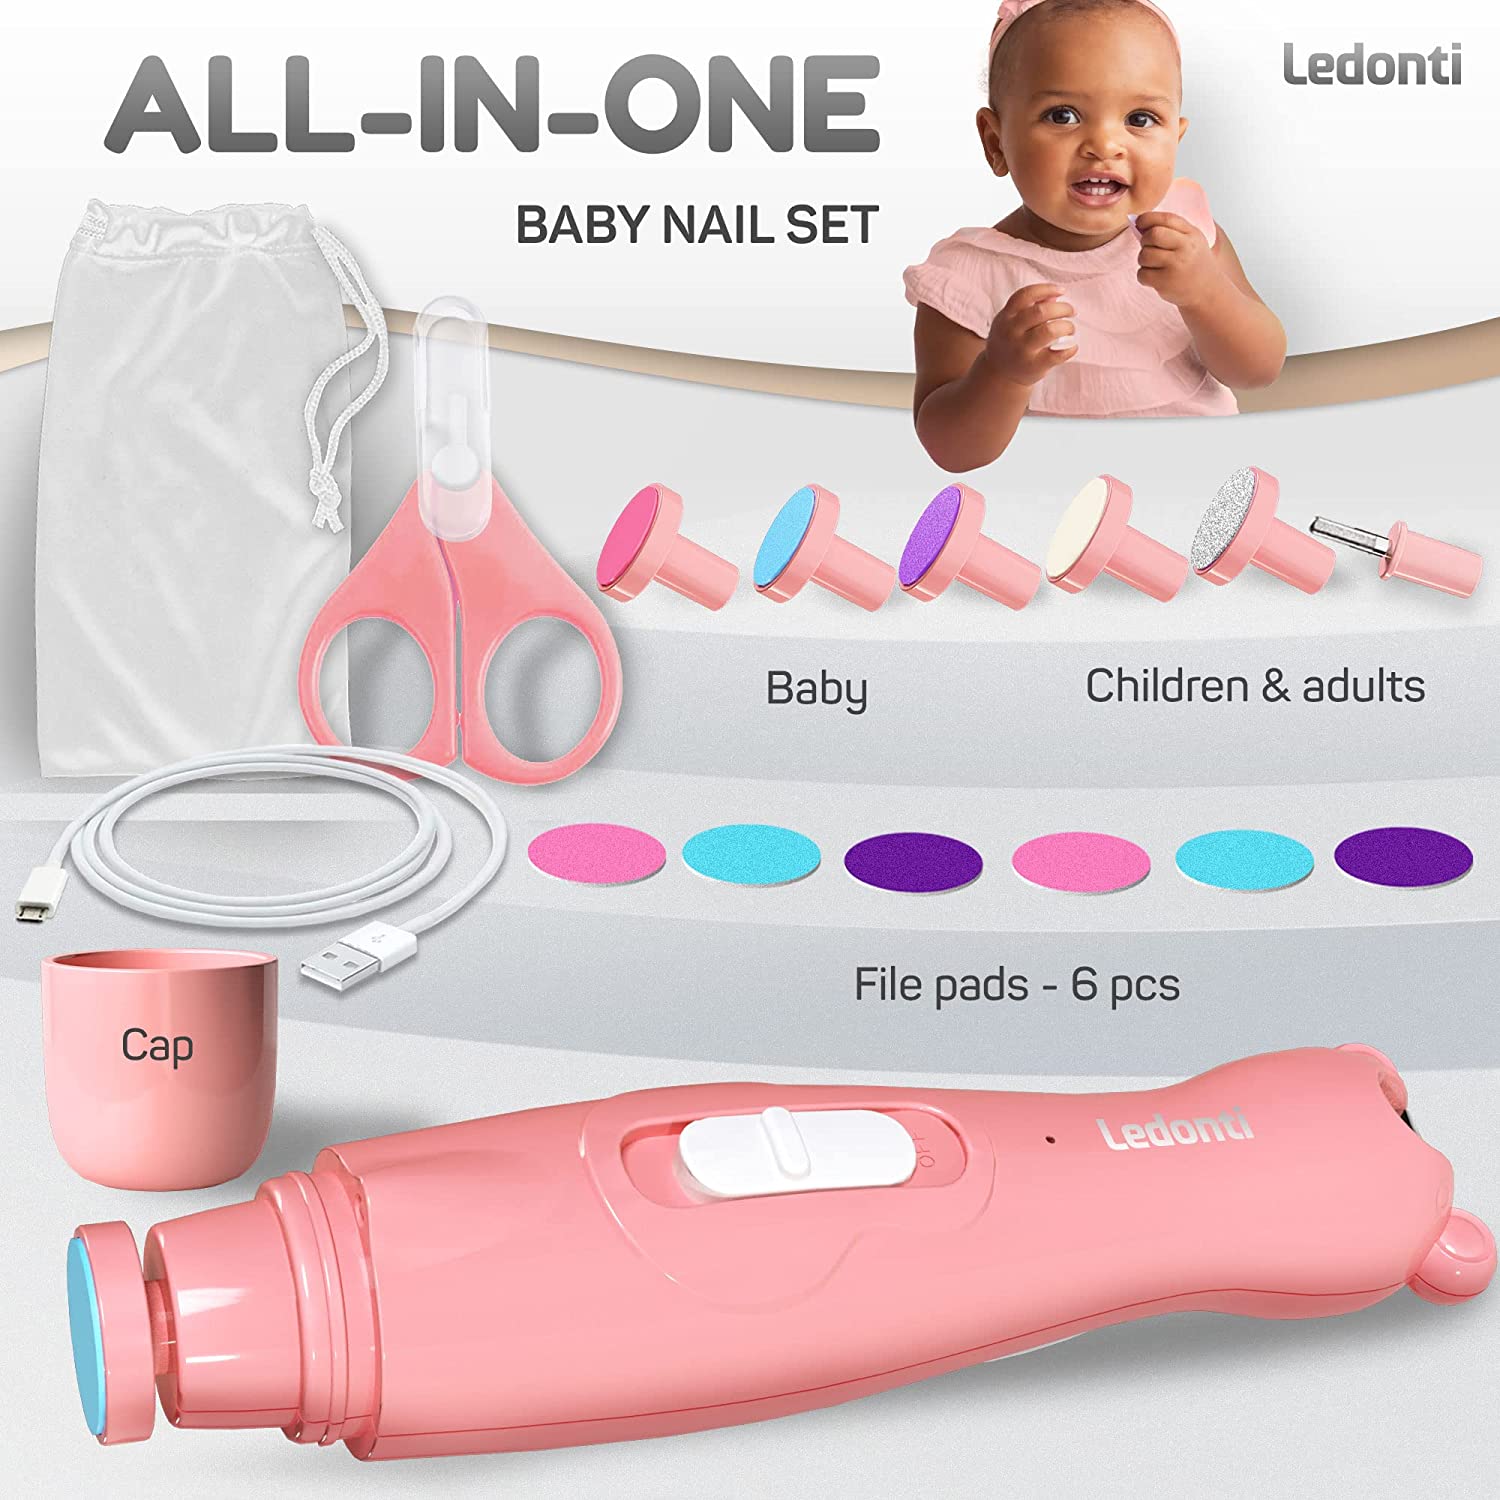 Manicure set for babys